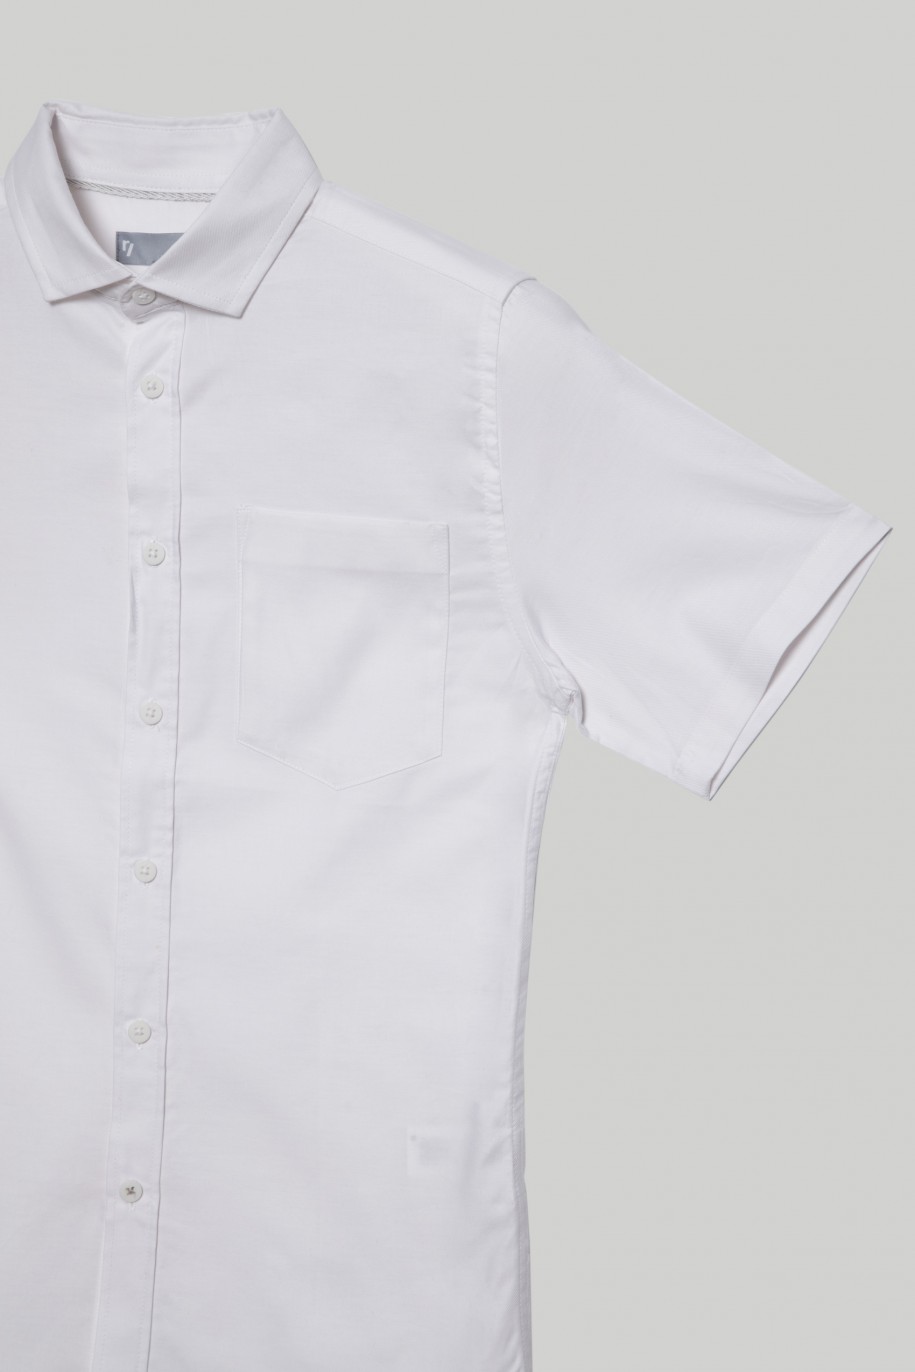 Biała klasyczna koszula z krótkim rękawem dla chłopaka - 29175